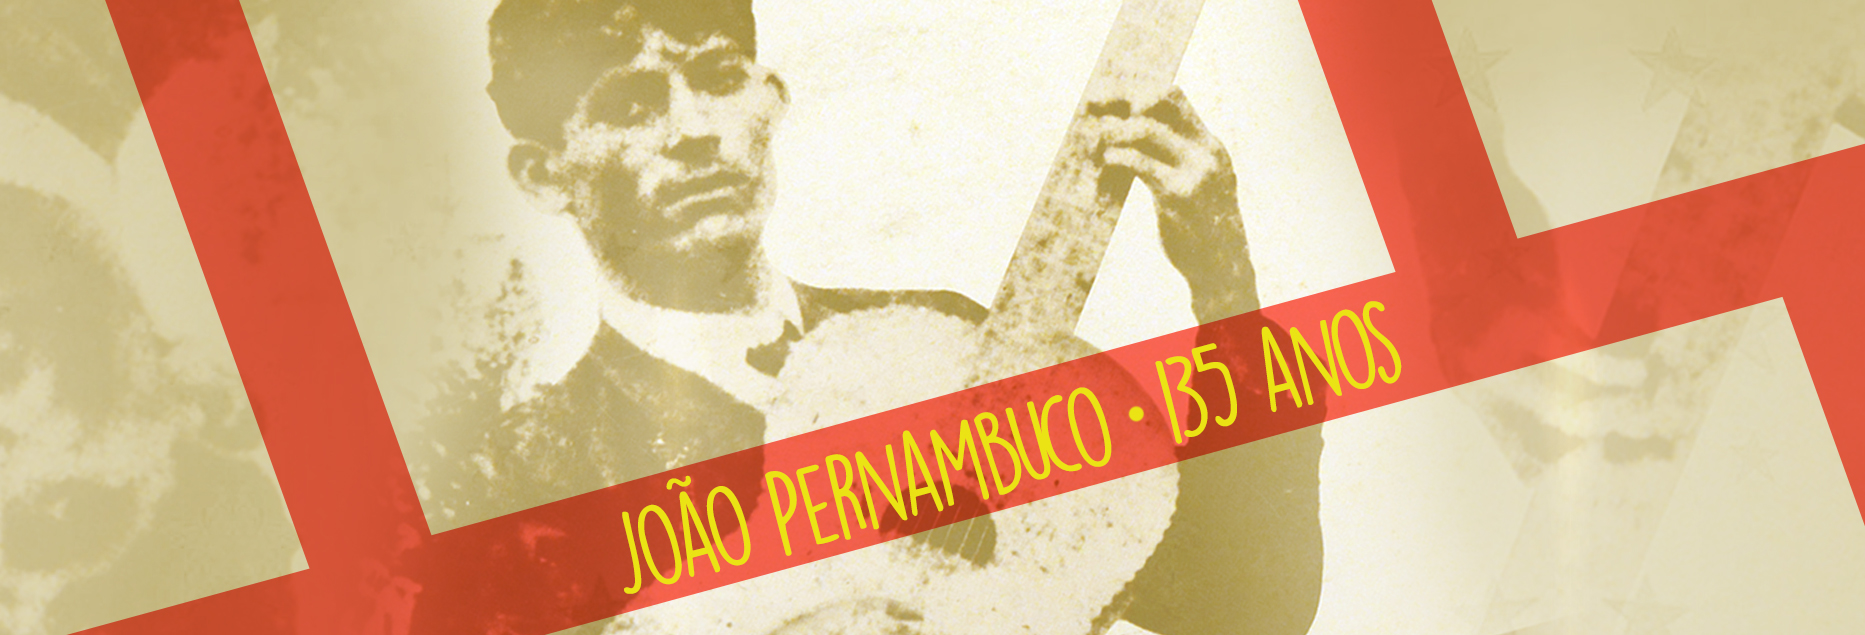 João Pernambuco: 135 anos do poeta do violão